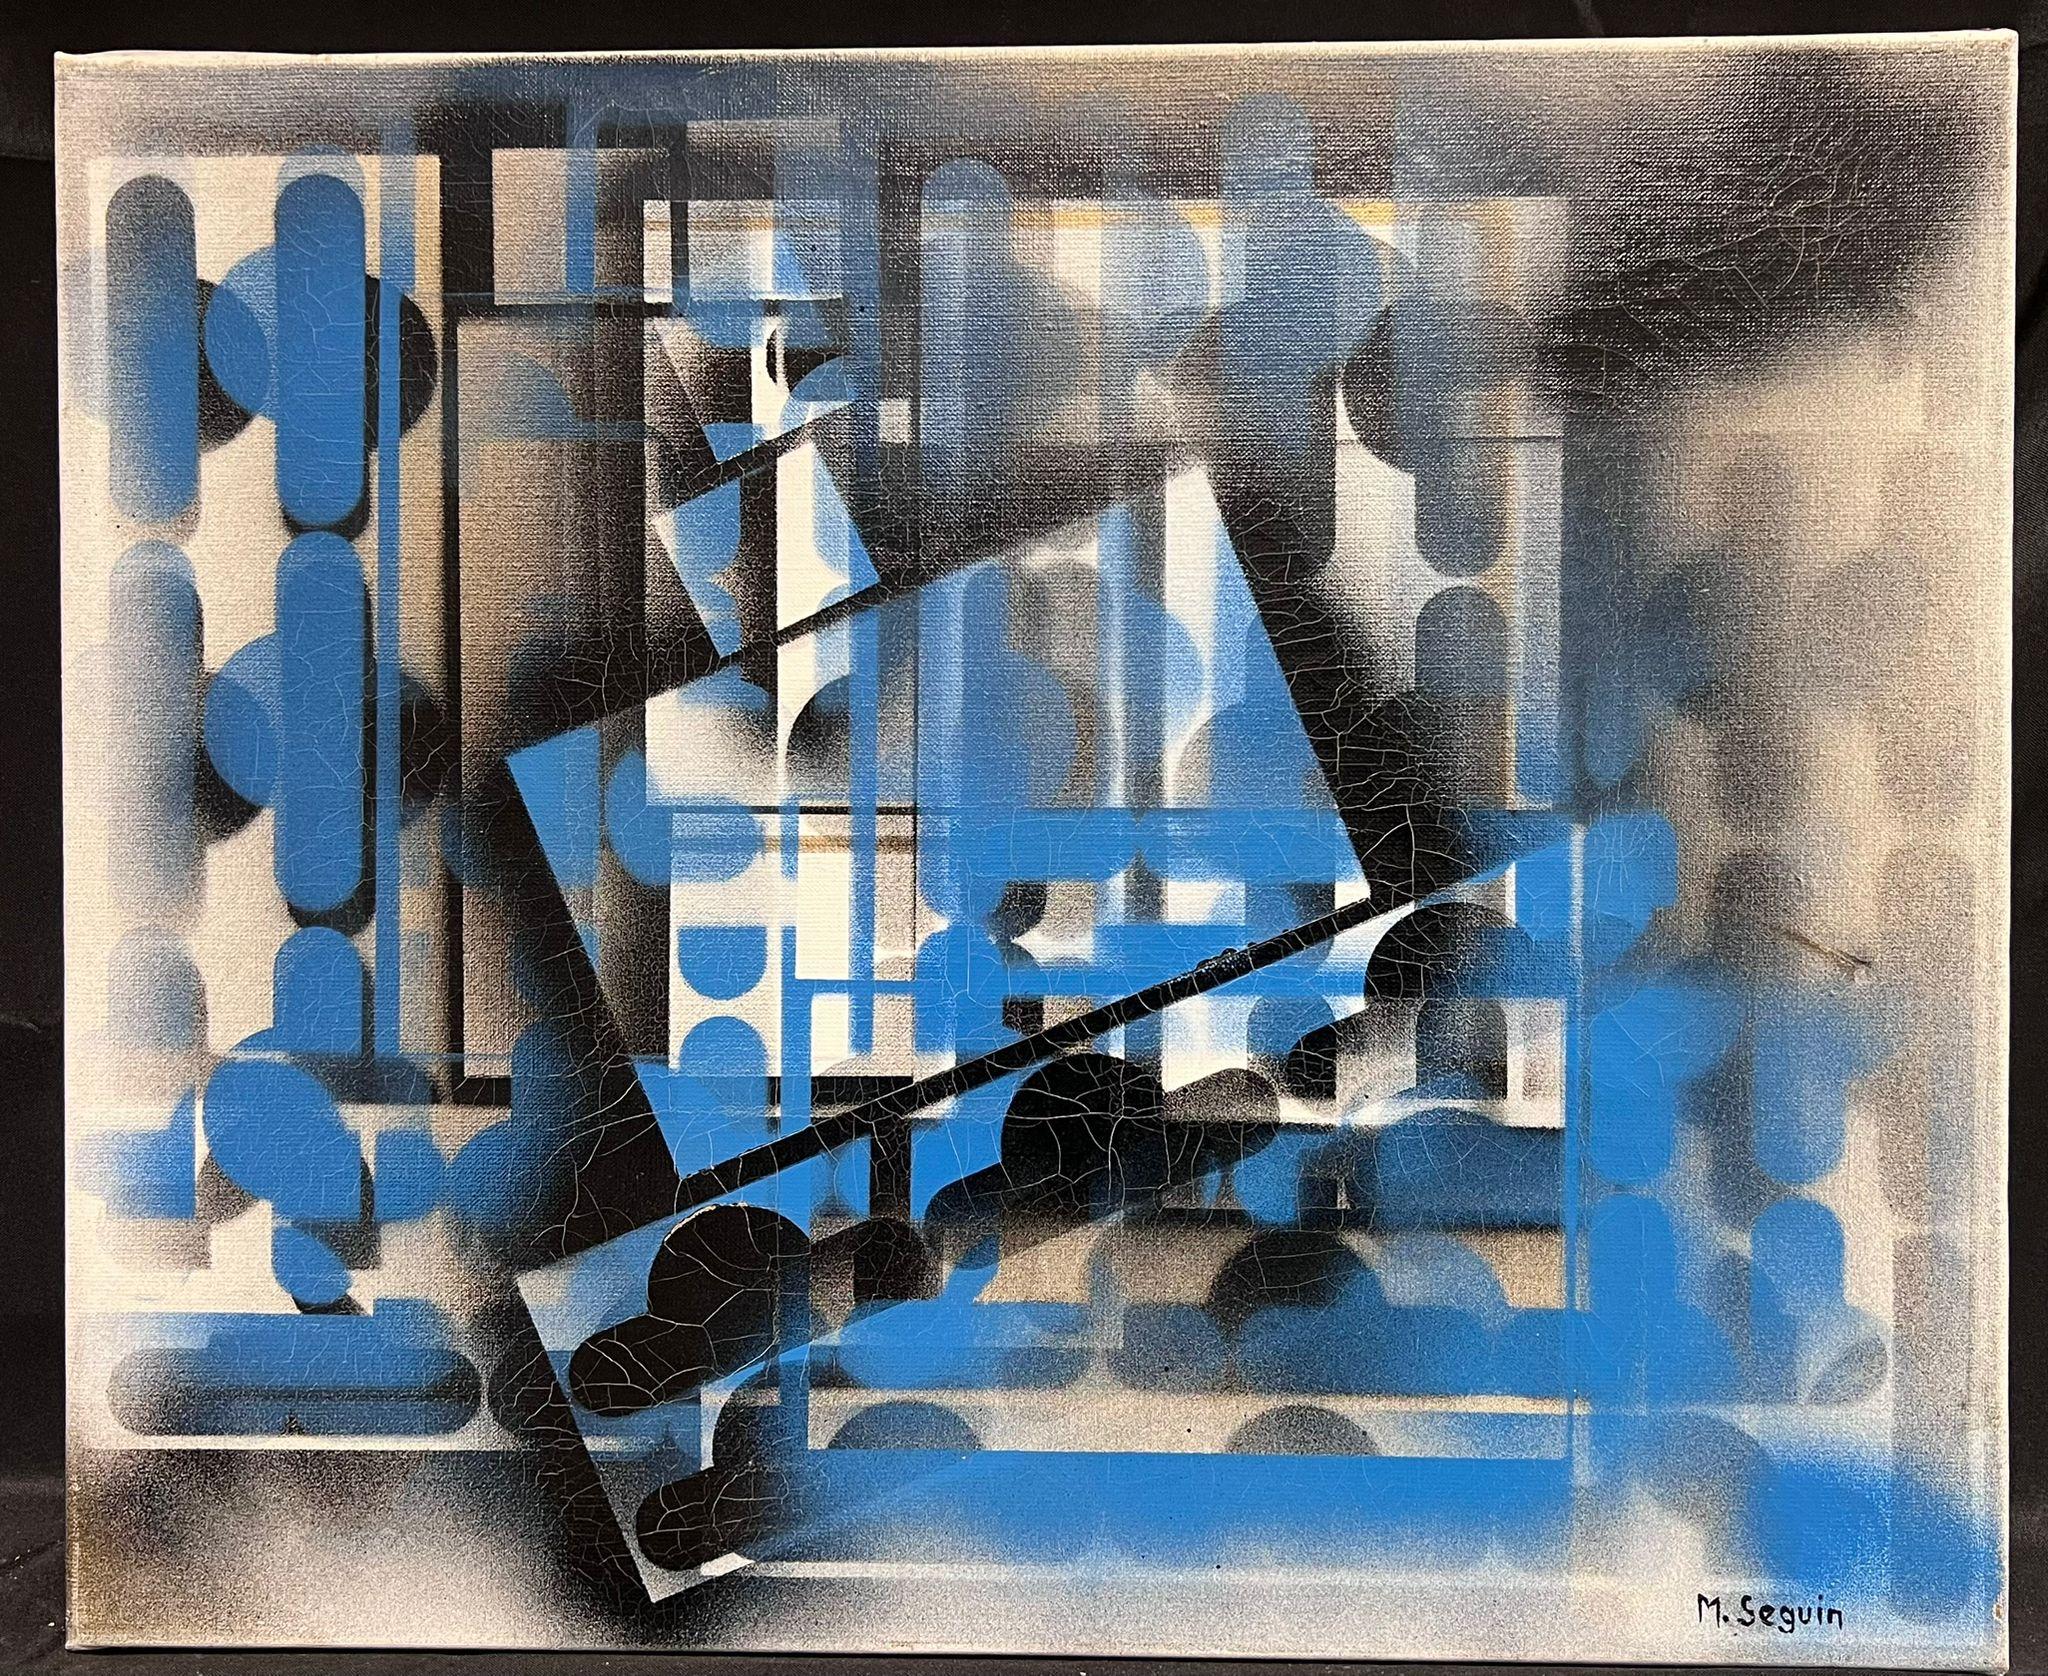 Grande peinture expressionniste abstraite française contemporaine noire, bleue et blanche - Painting de Michel Seguin